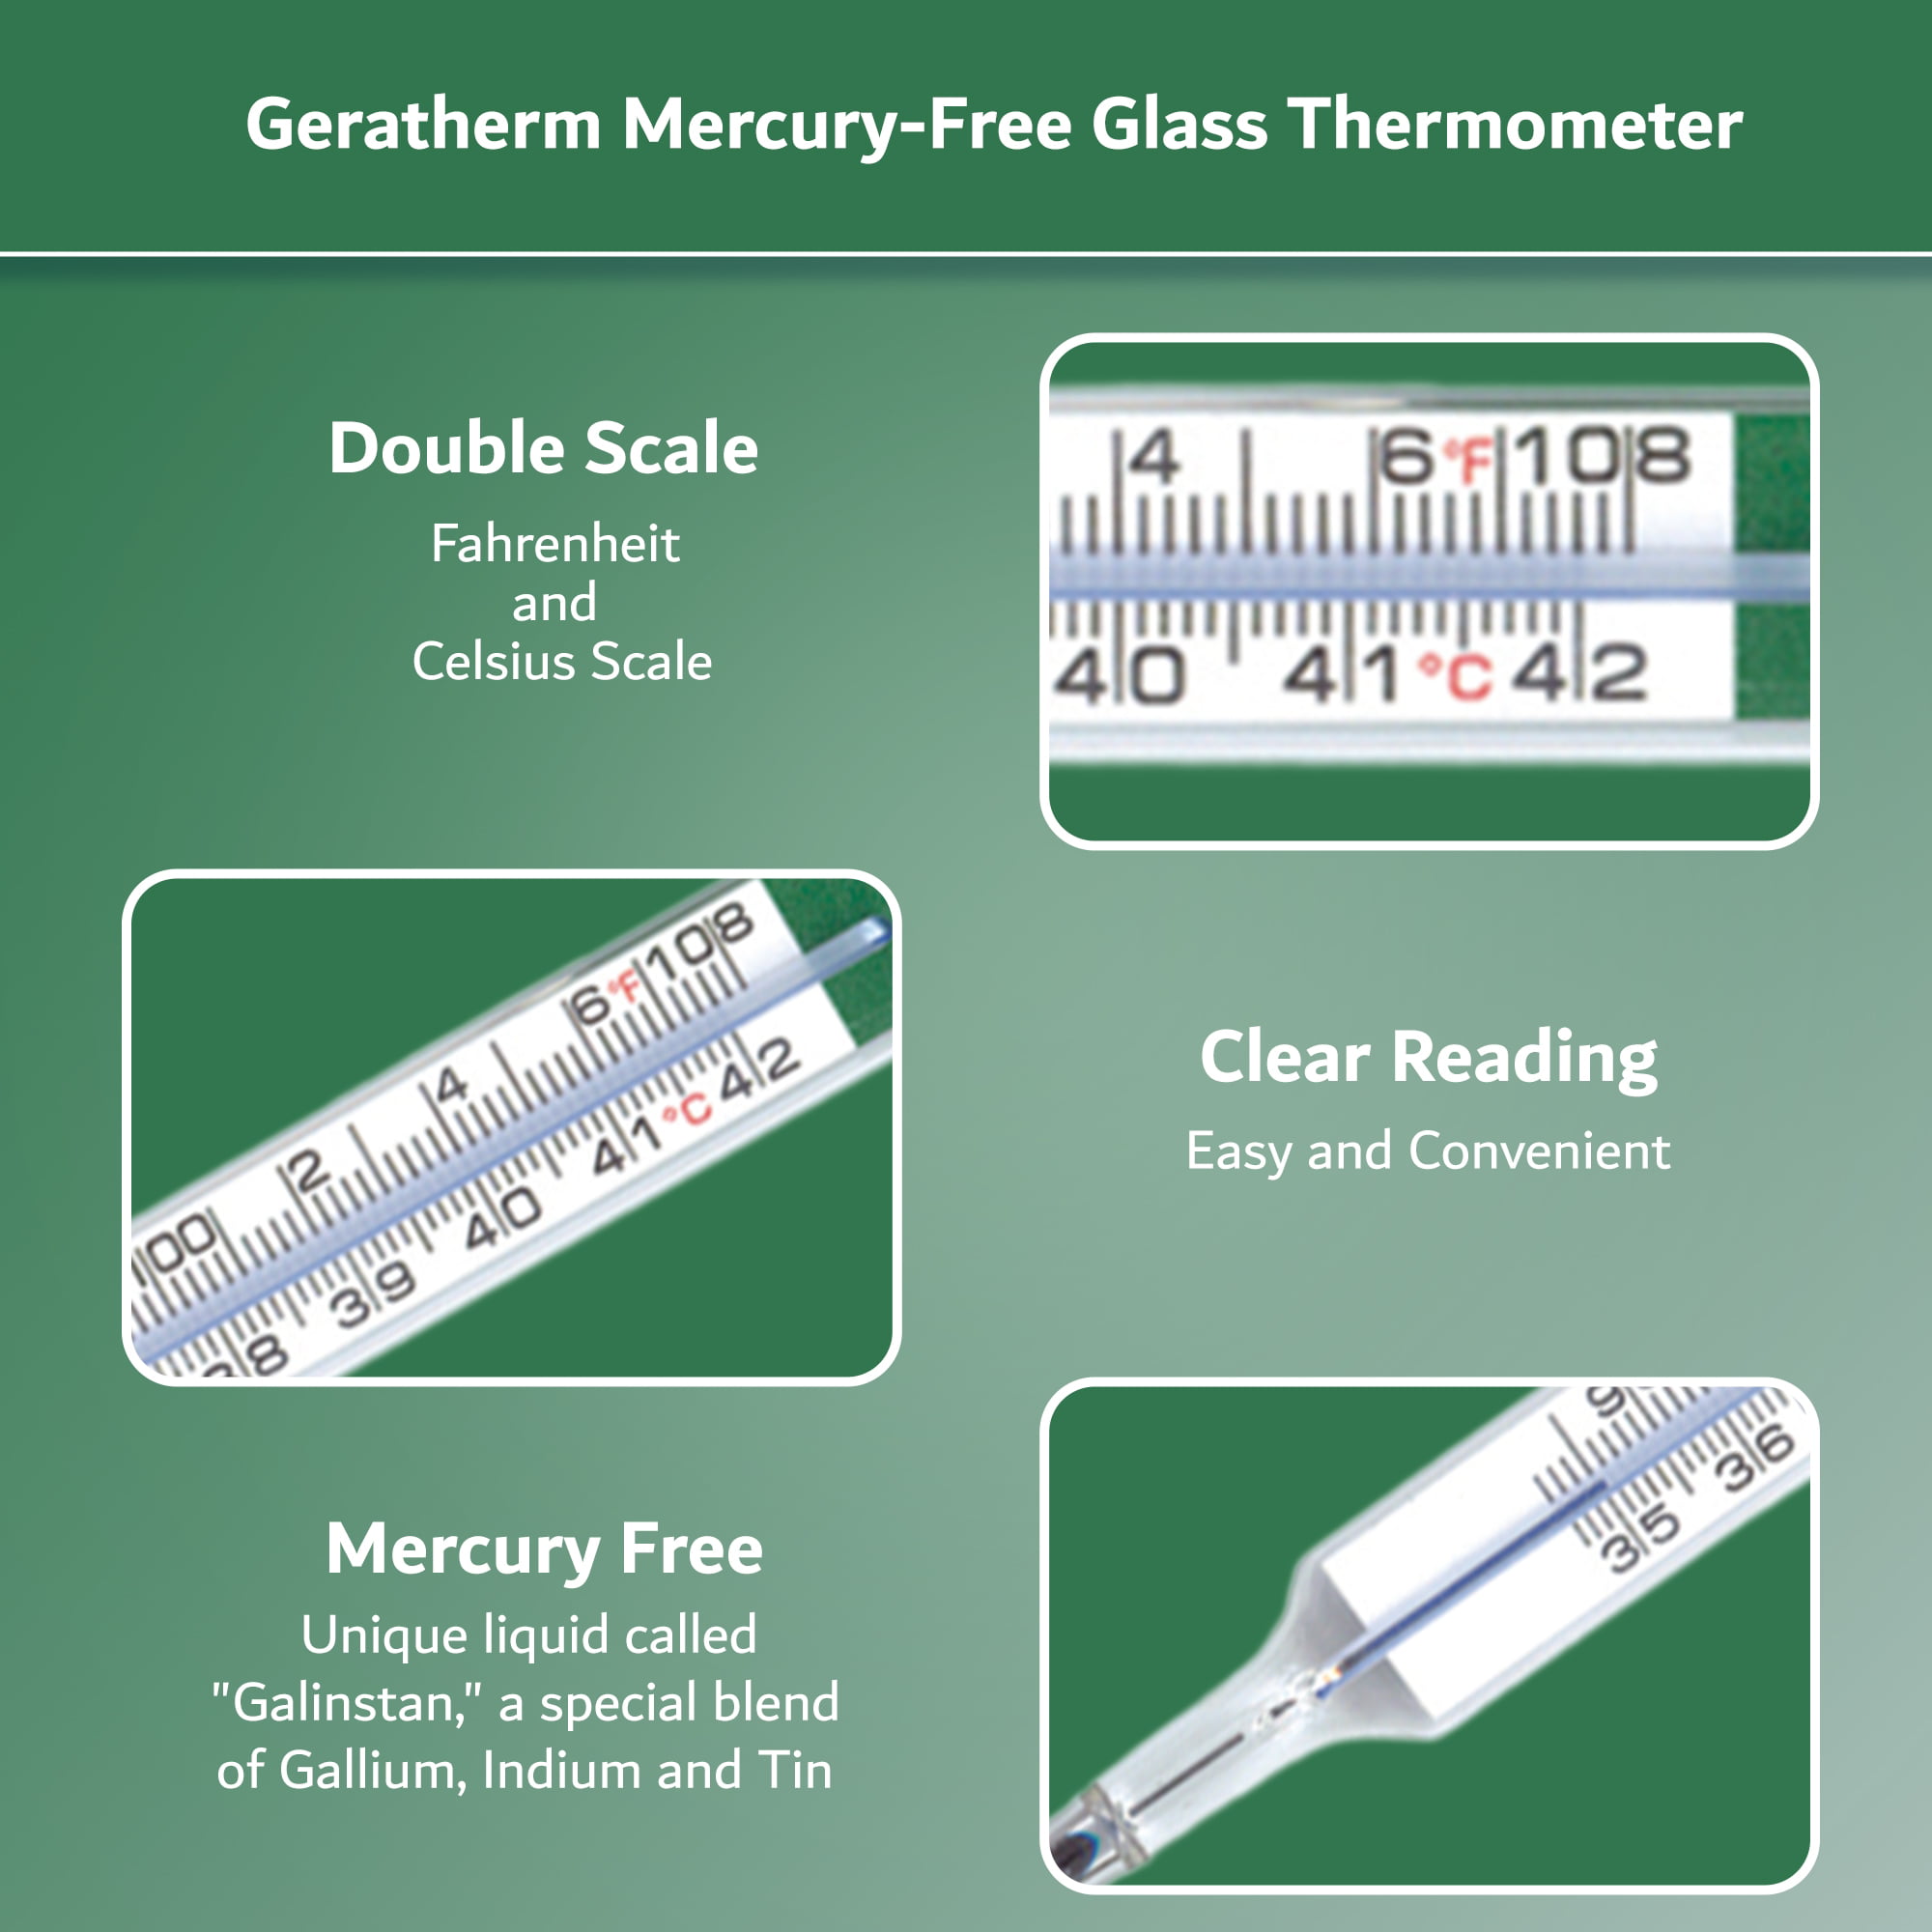 Thermometer analog für Gärtanks (mit Clip) • Brouwland